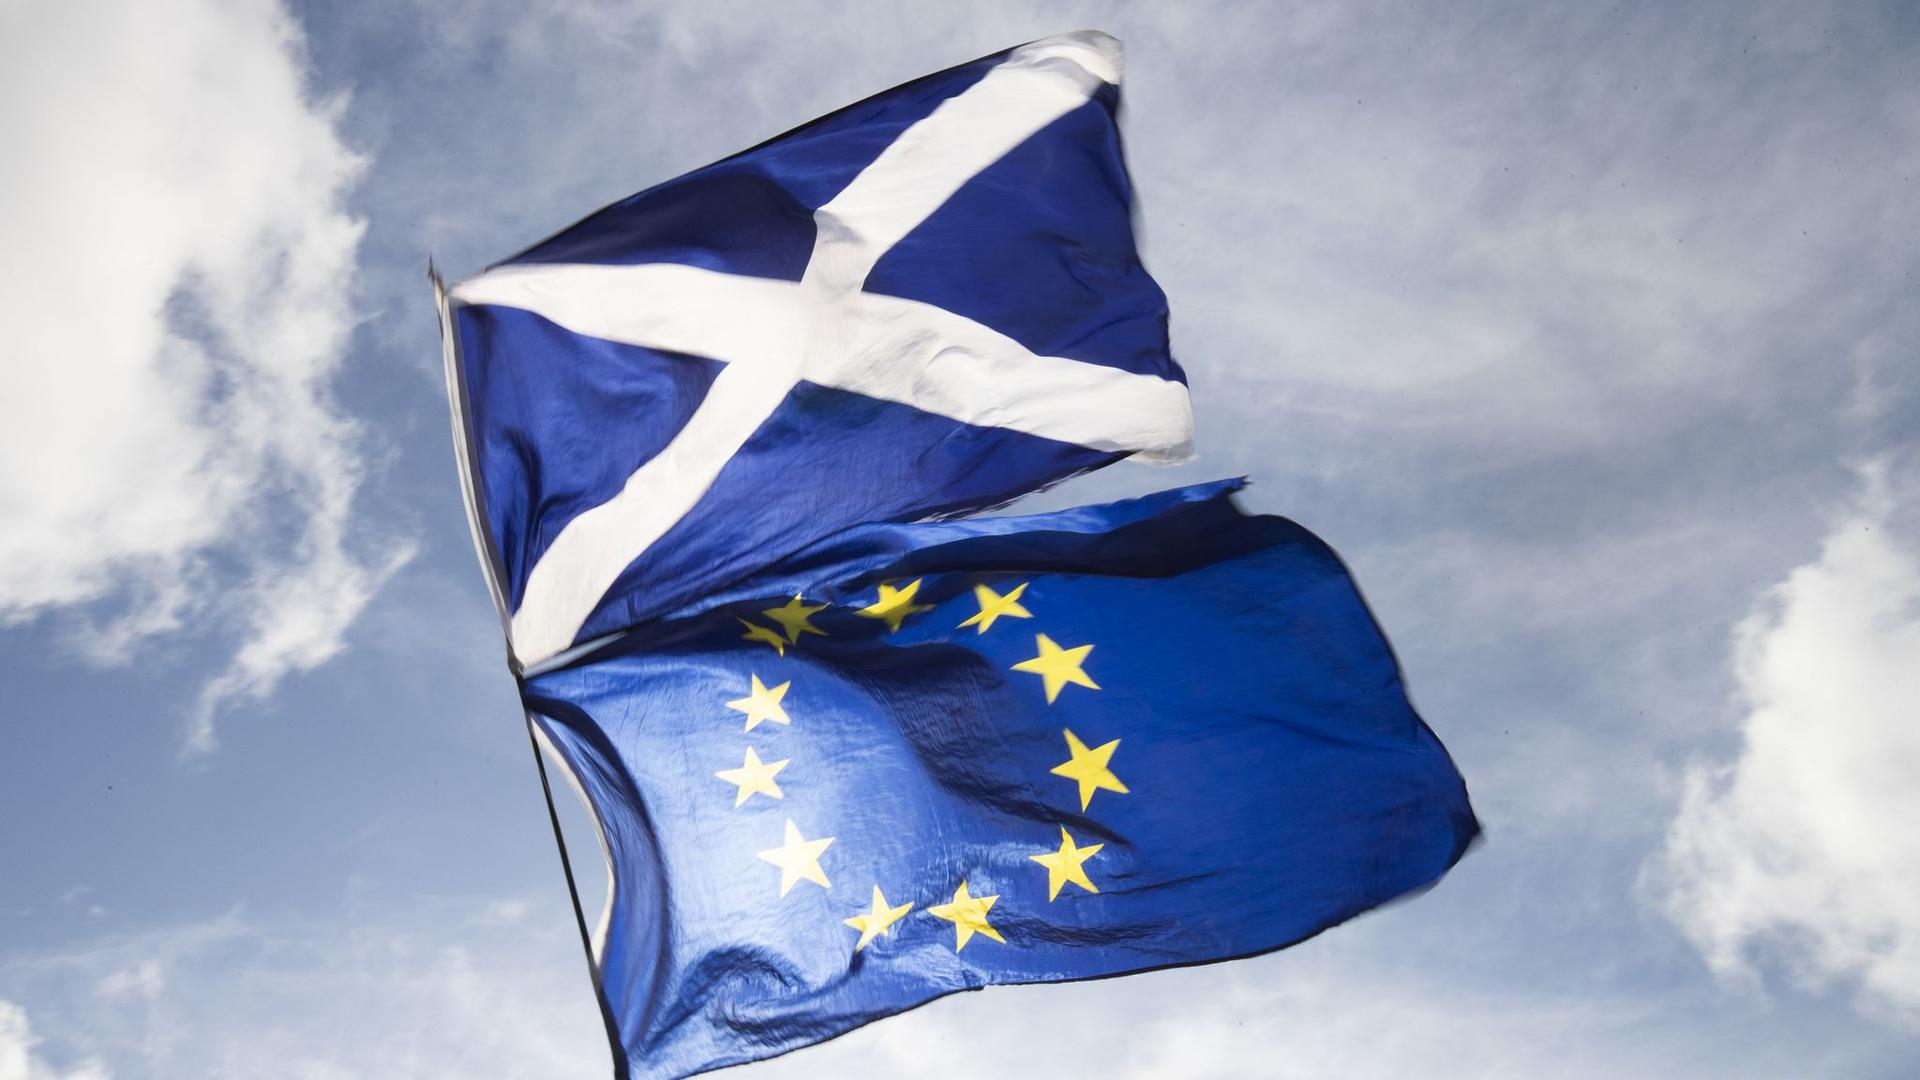 Die Flaggen von Schottland und der EU.